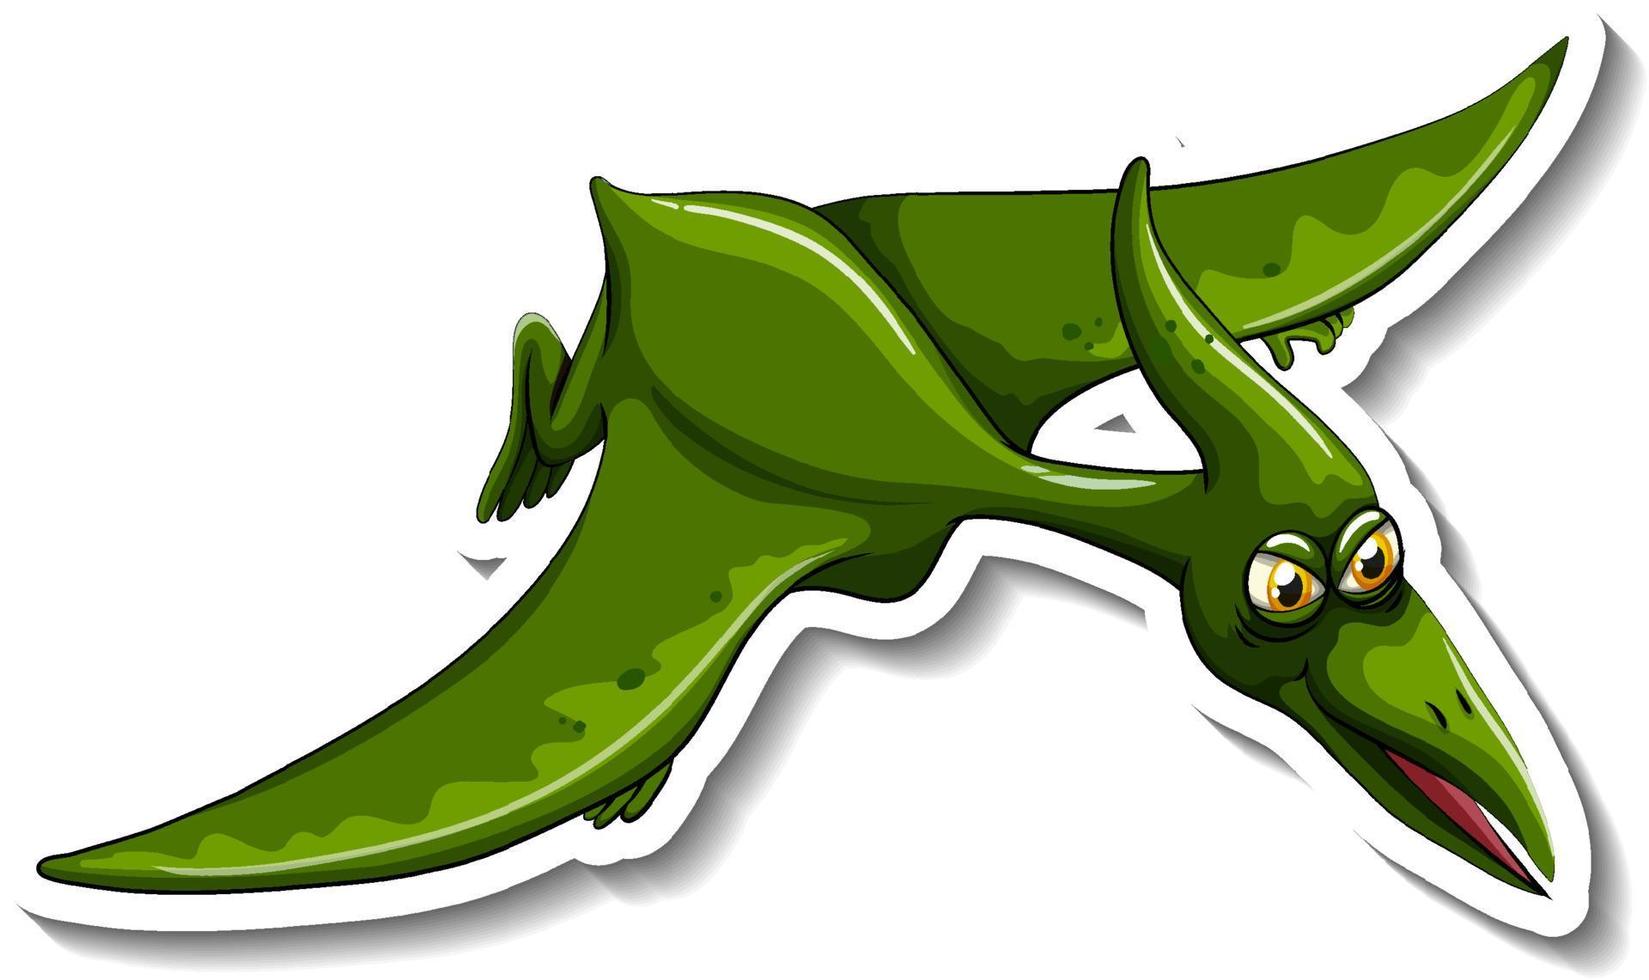 etiqueta engomada del personaje de dibujos animados del dinosaurio pteranodon vector